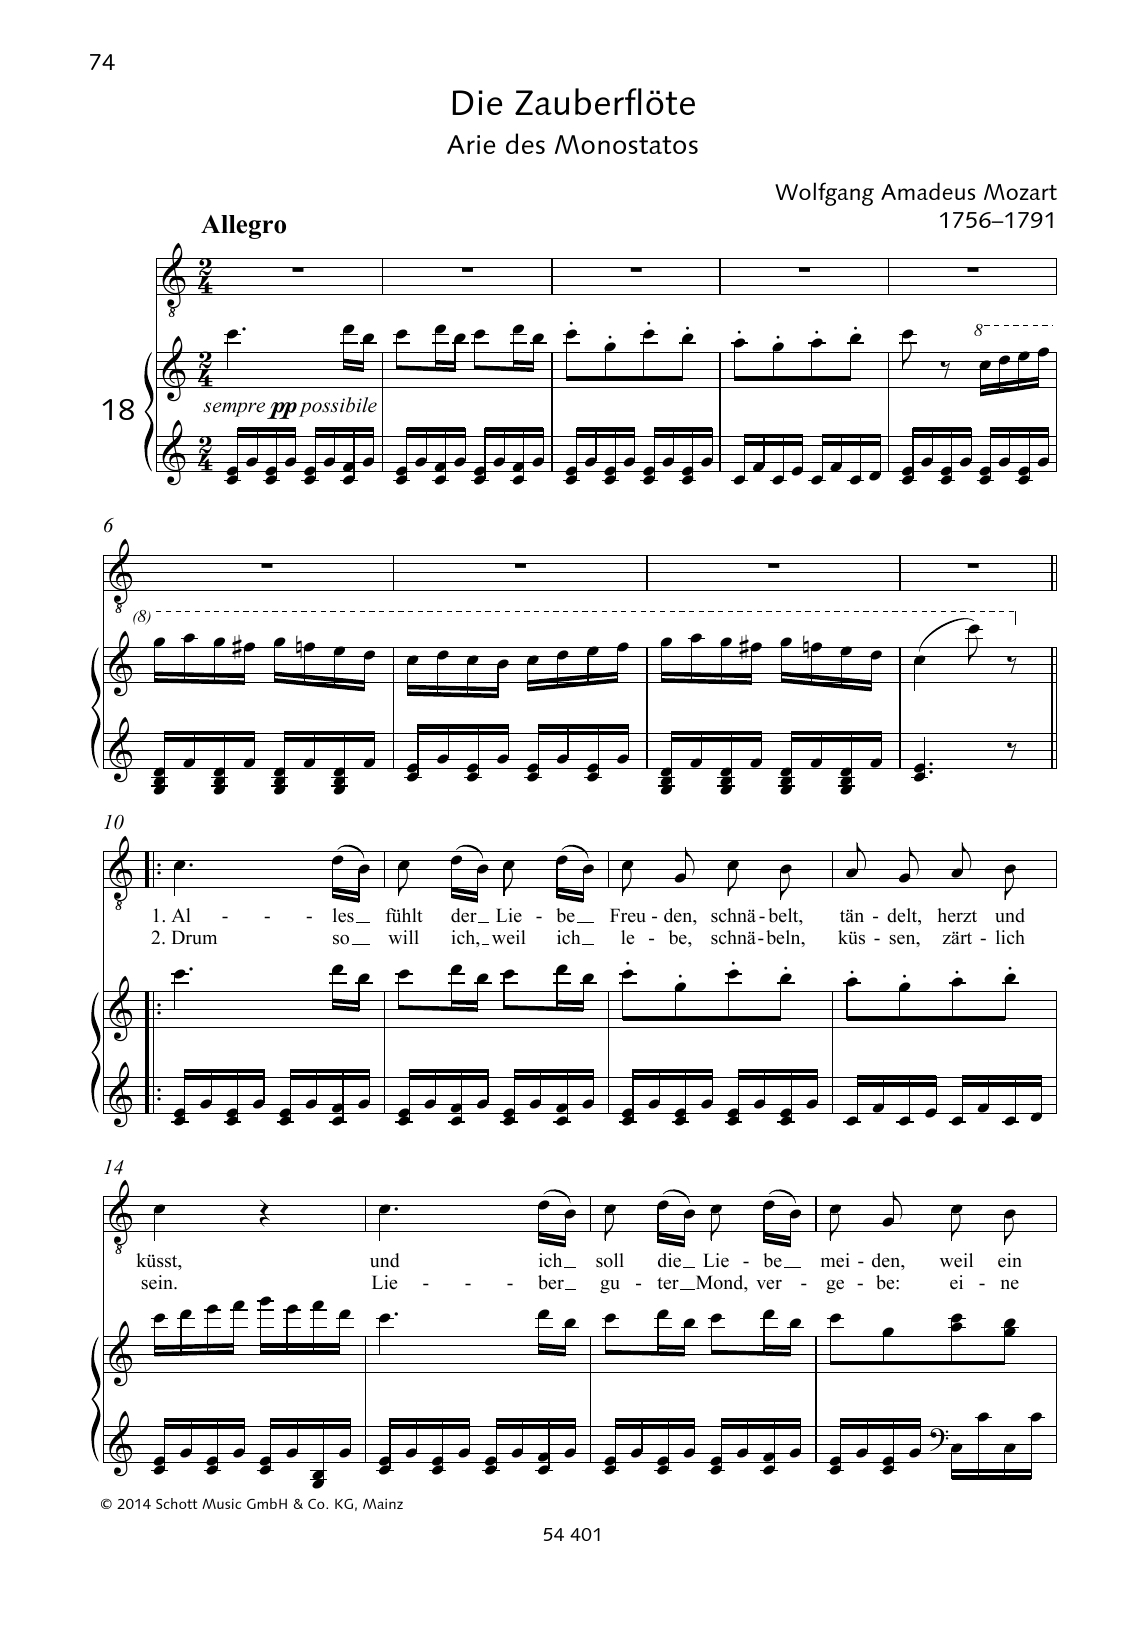 Download Wolfgang Amadeus Mozart Alles fühlt der Liebe Freuden Sheet Music